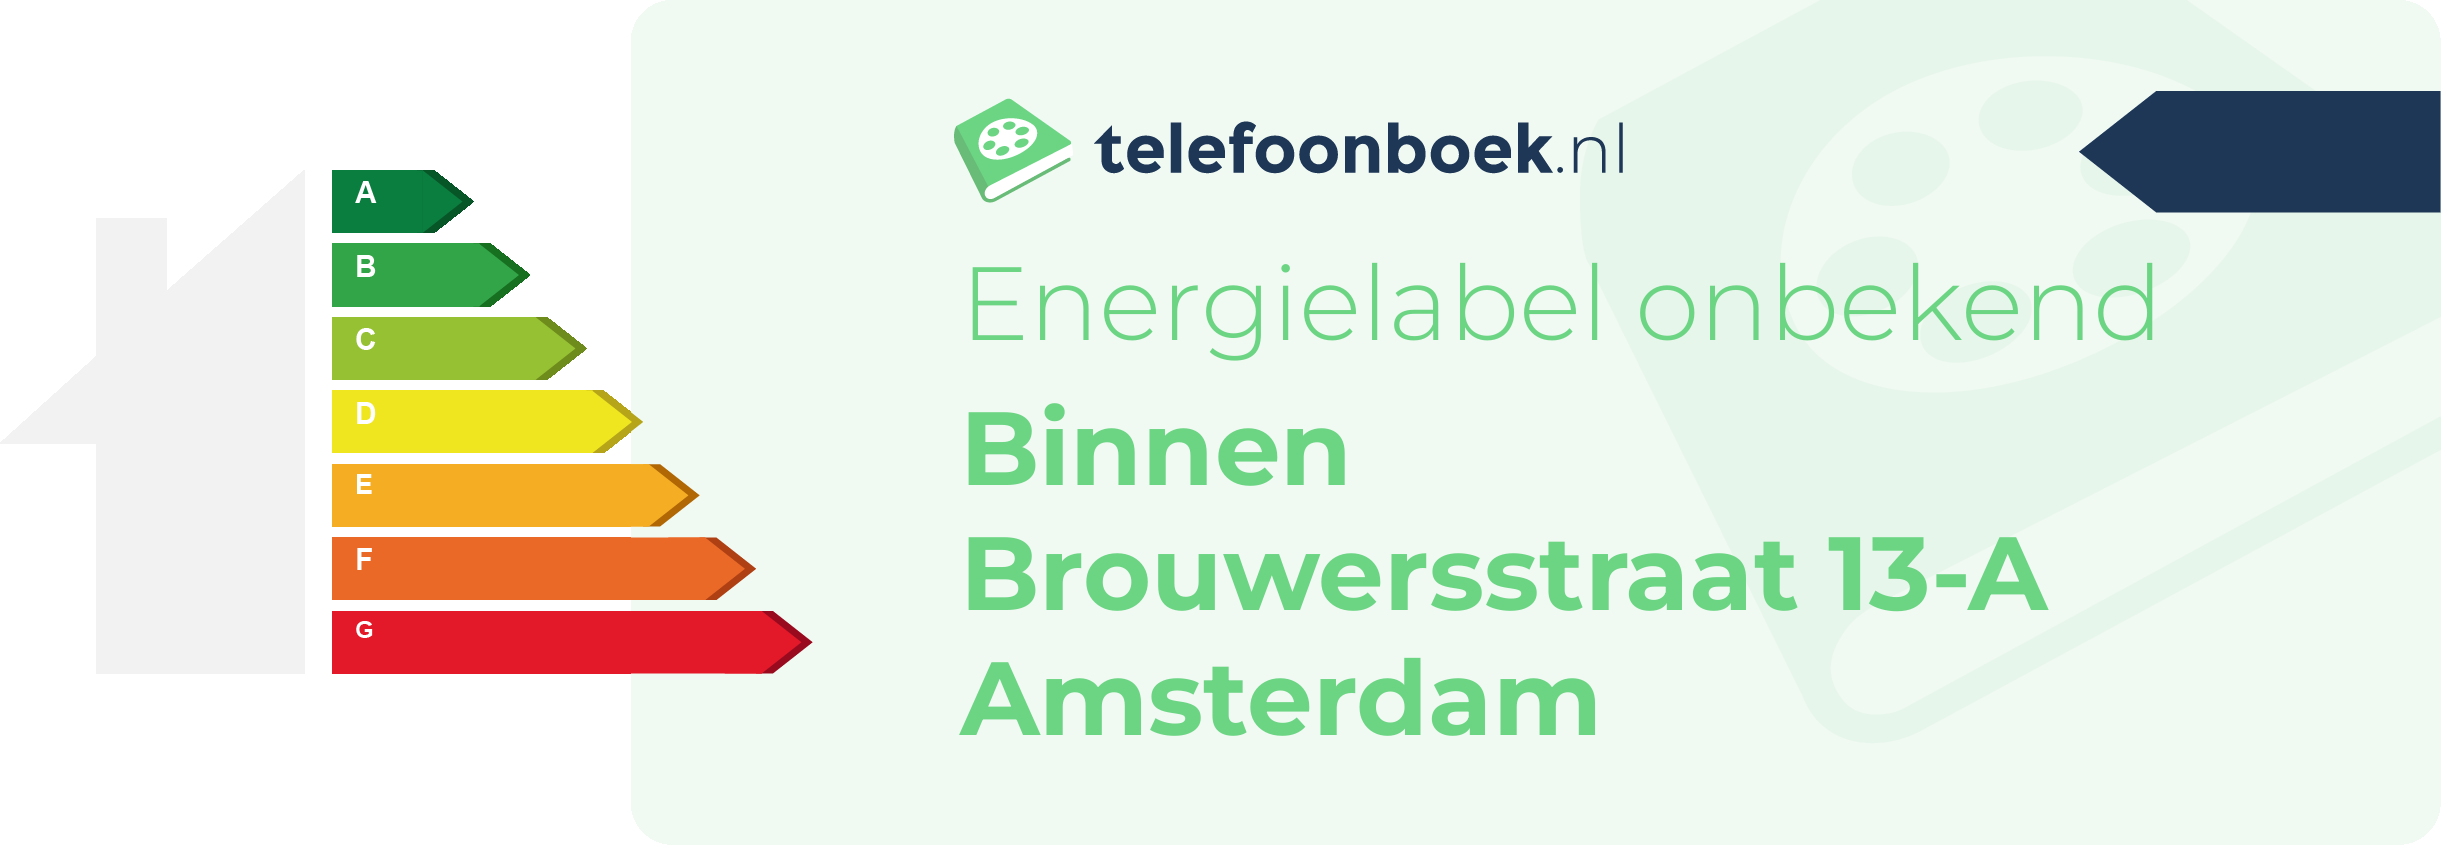 Energielabel Binnen Brouwersstraat 13-A Amsterdam